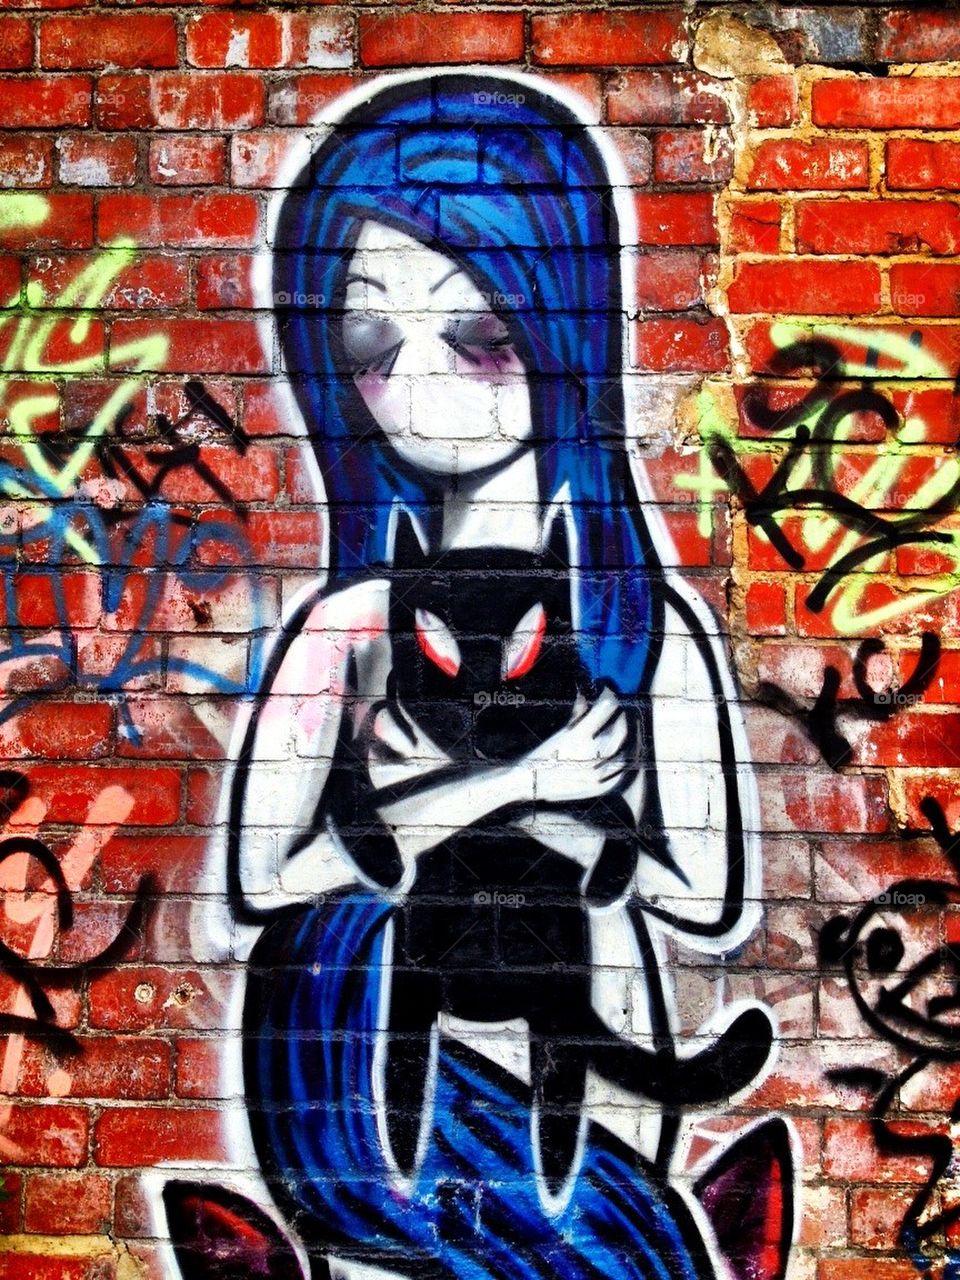 Graffiti art of girl holding cat. 